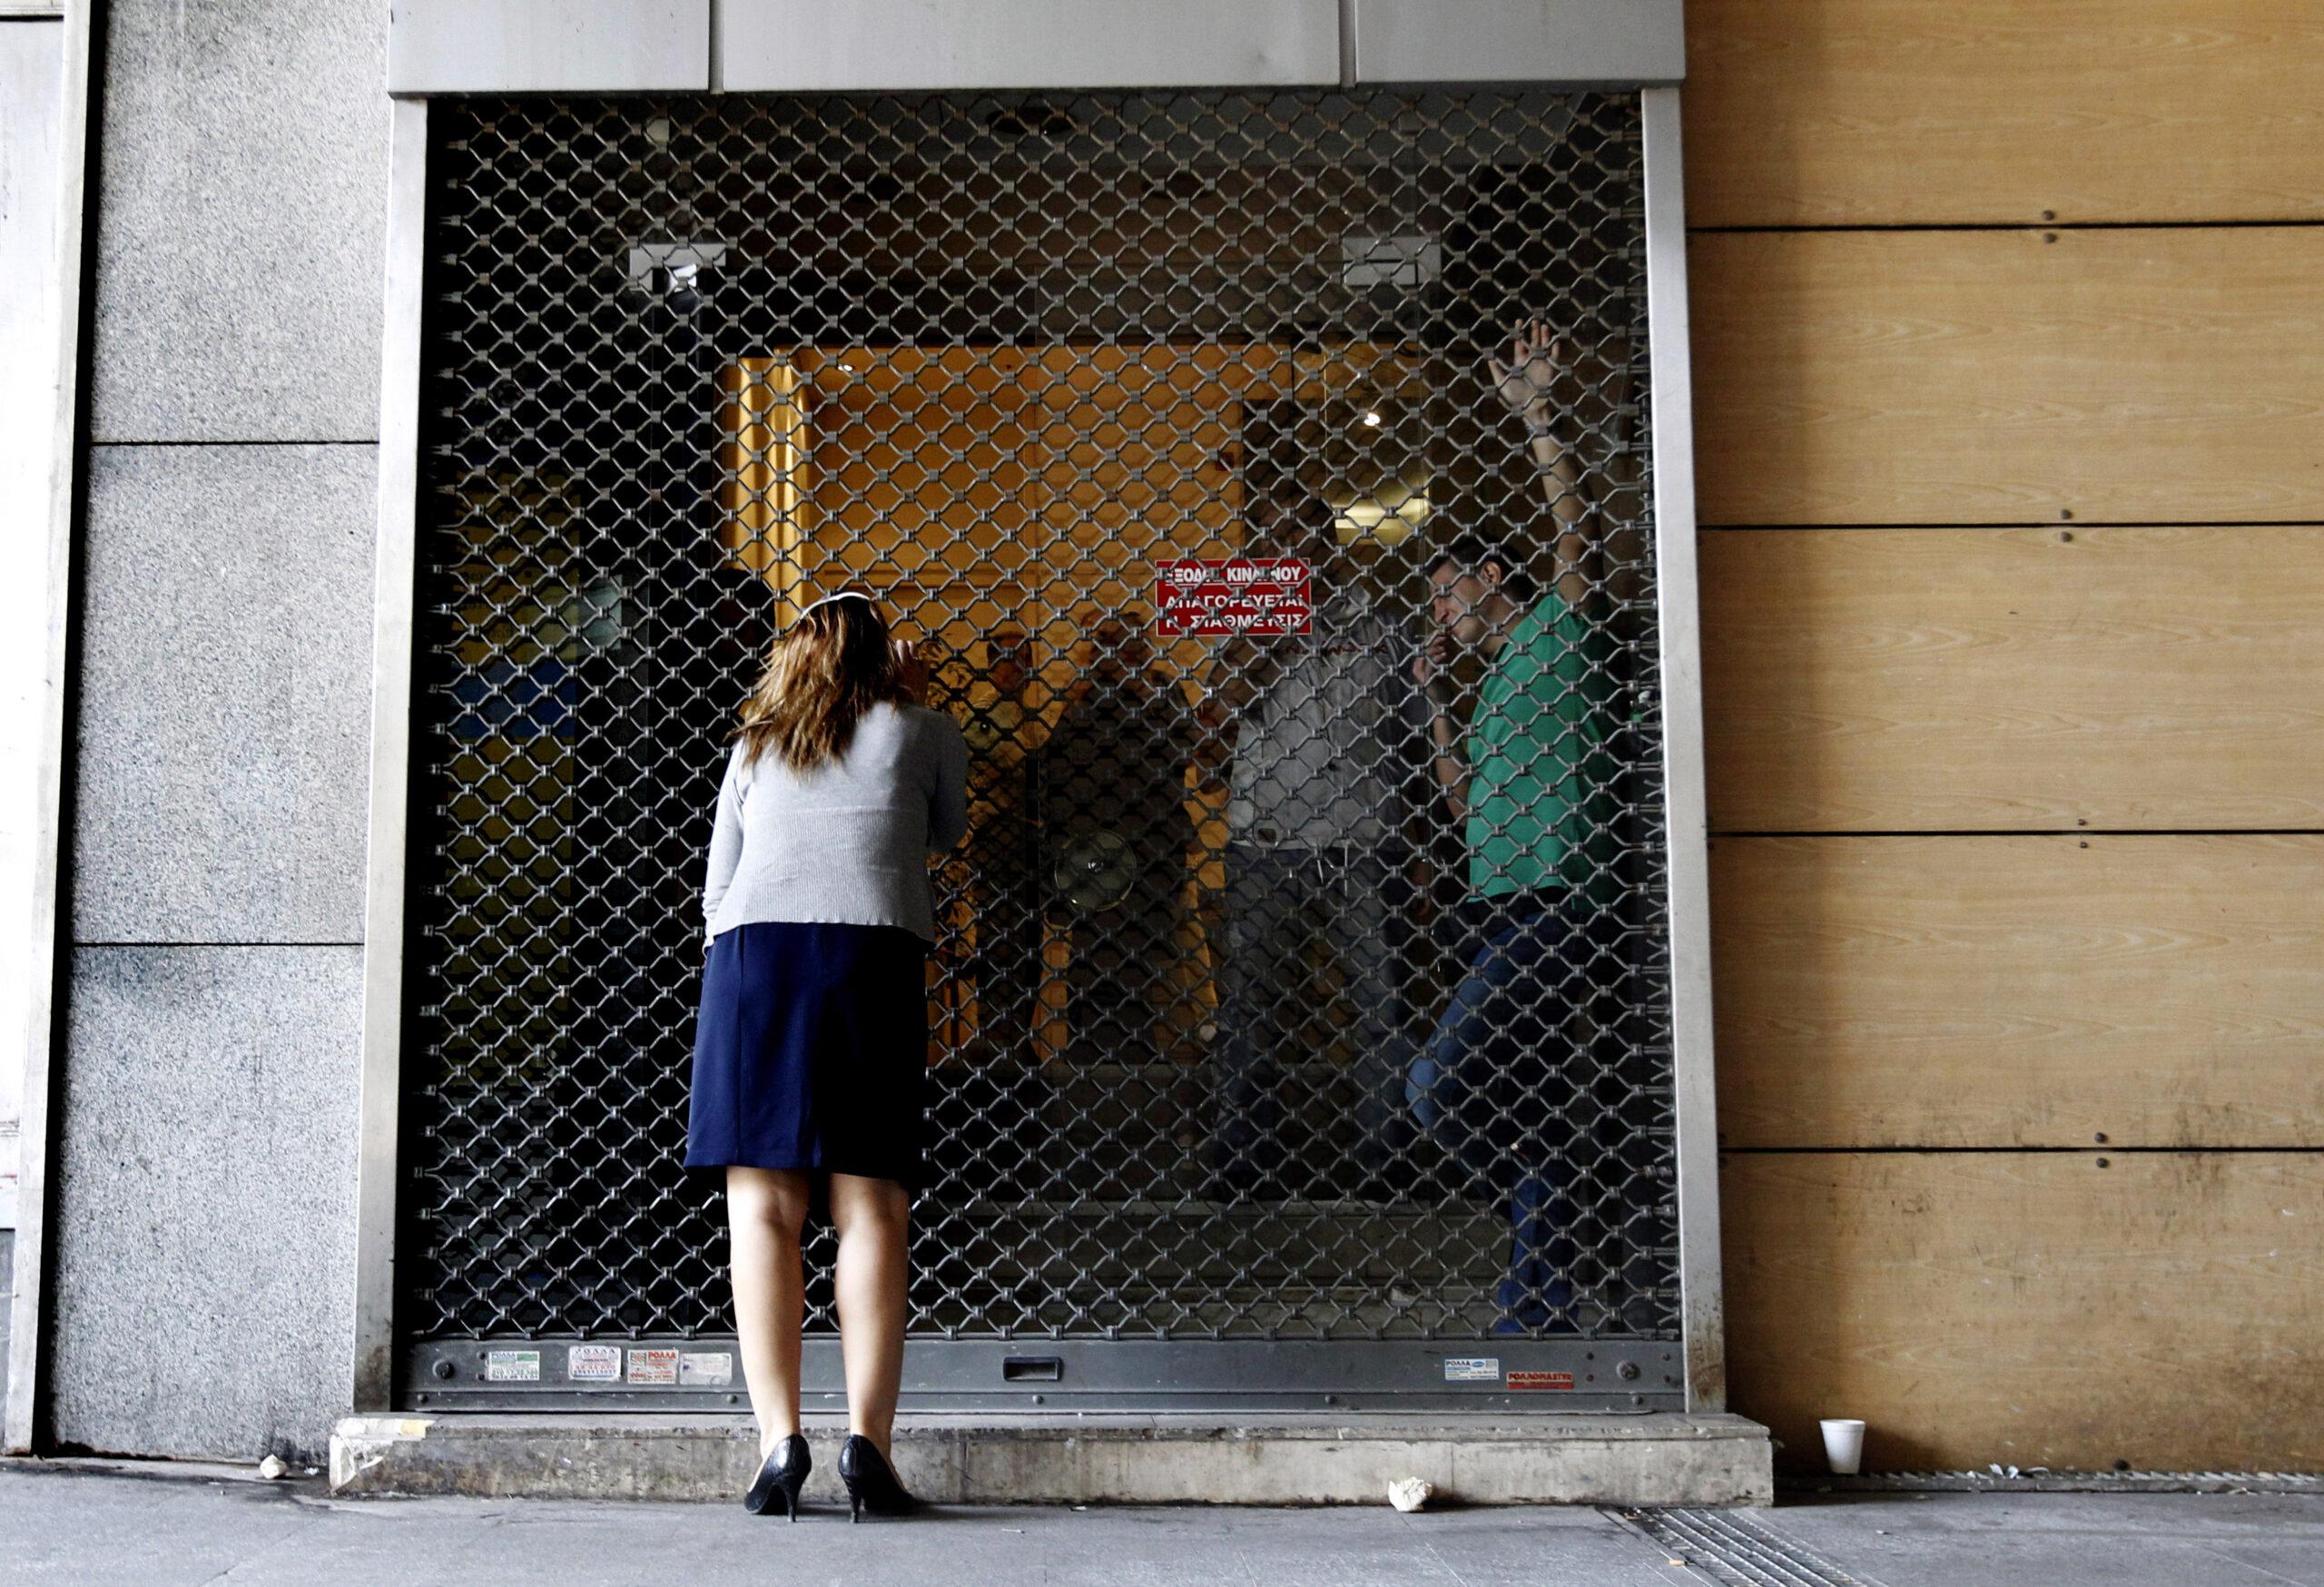 Grecia fue paralizada el miércoles por una huelga general